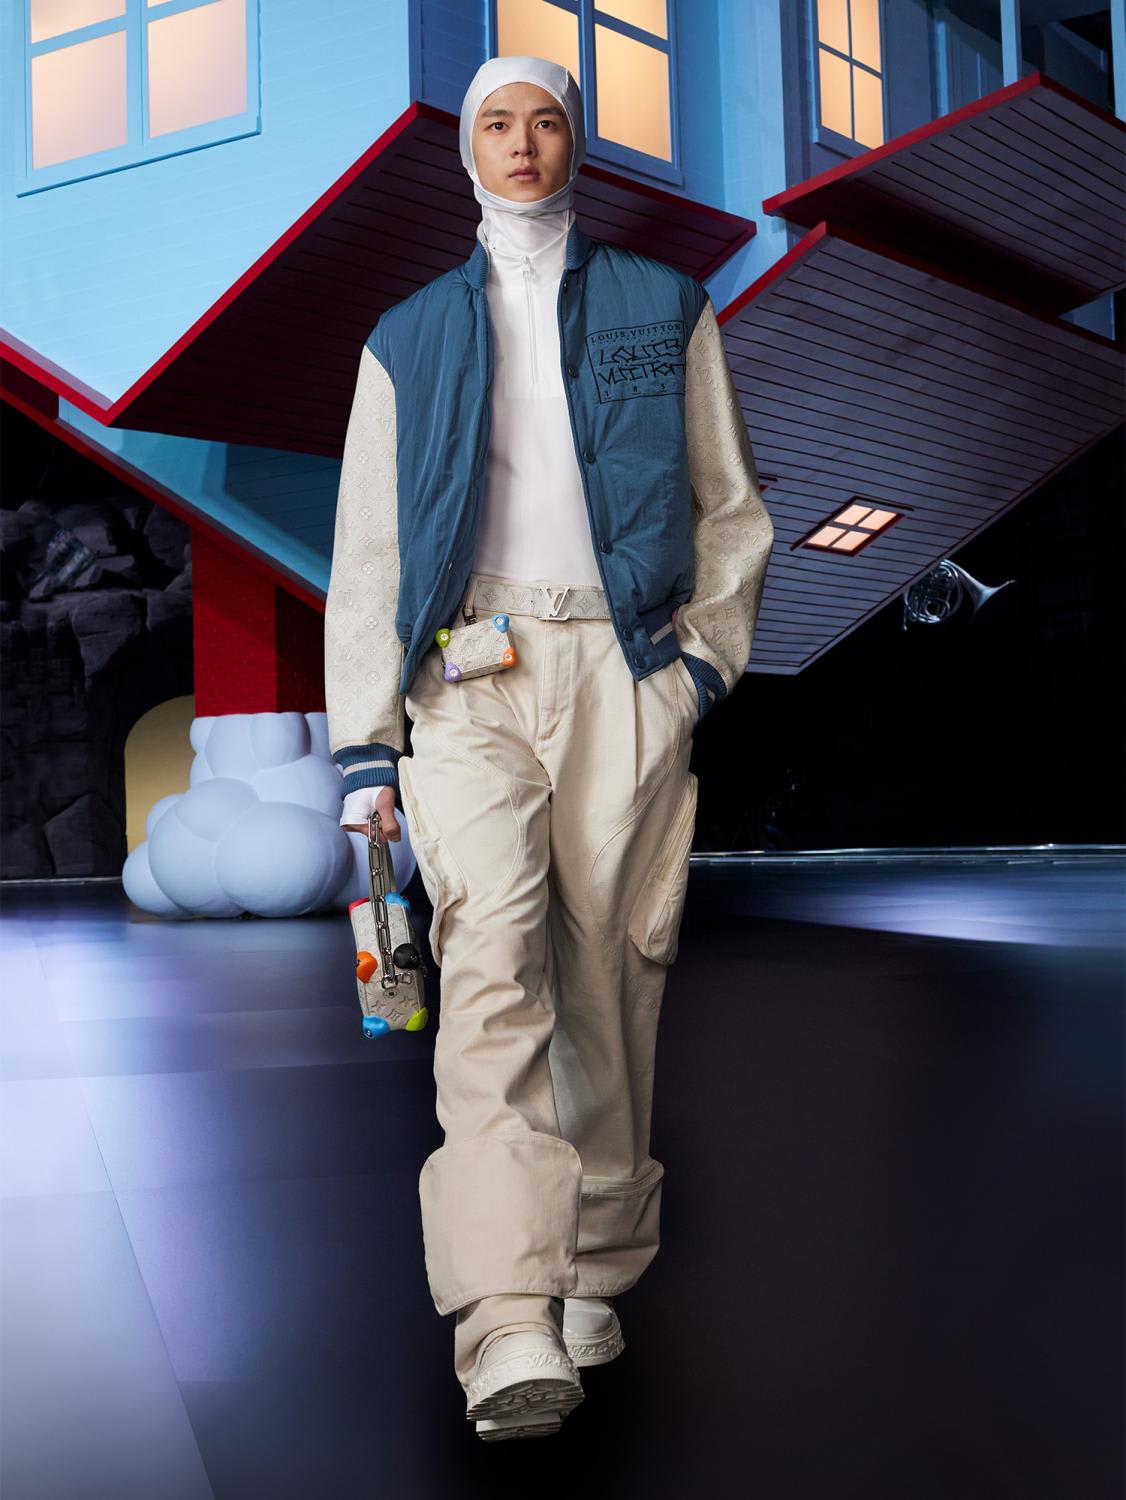 When Desmond Tan bumped into Park Bo-gum at Louis Vuitton's show